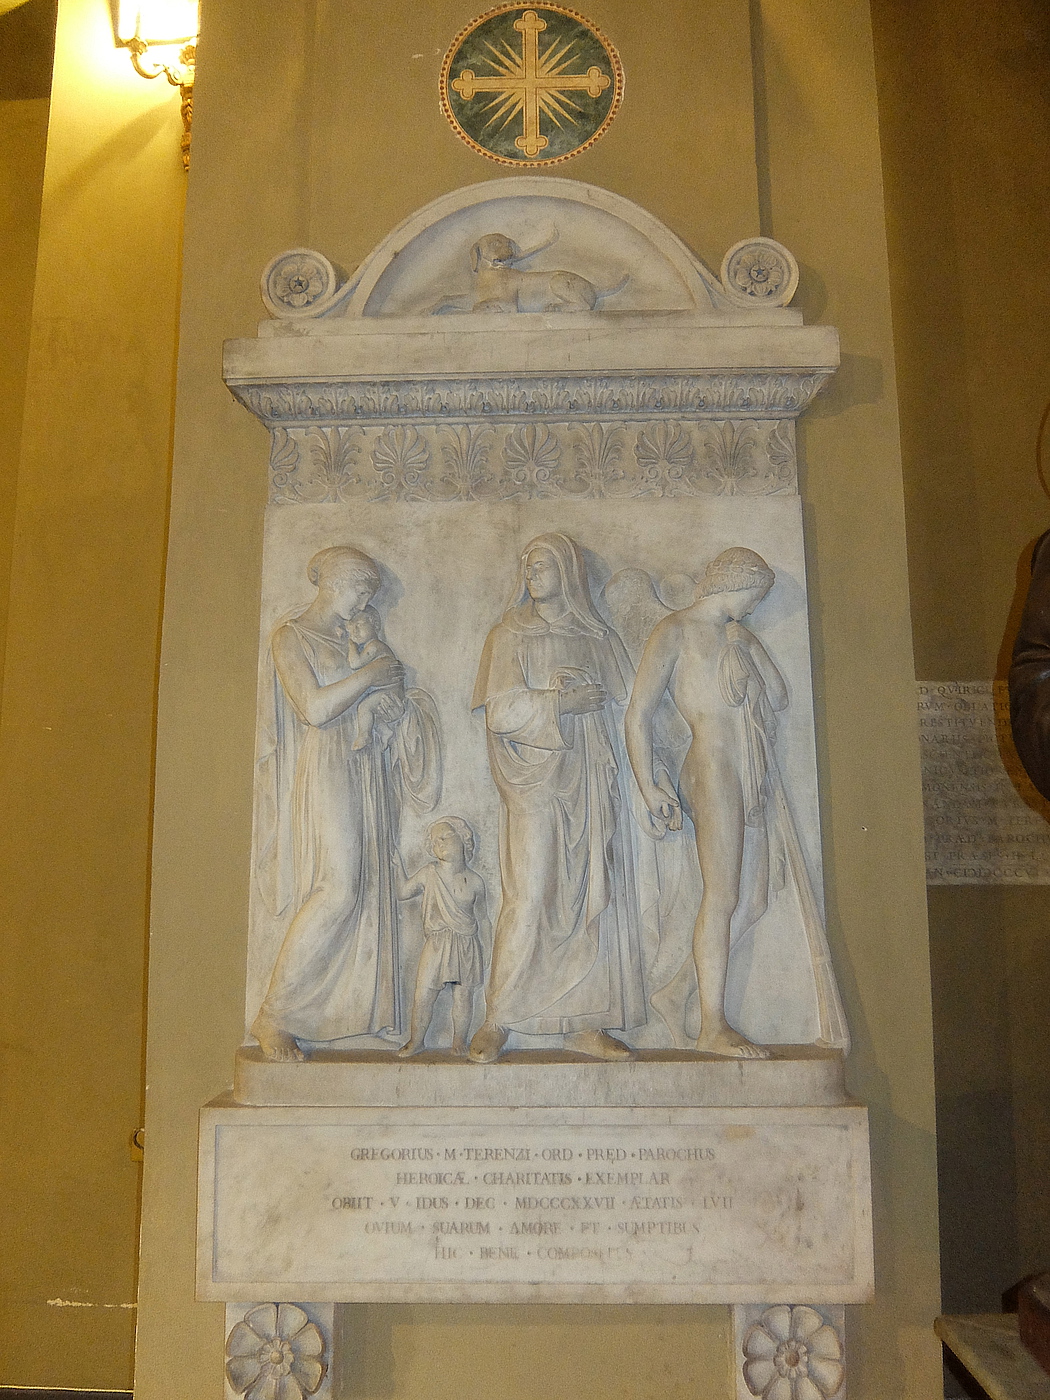 Costantino Brumidi: Gravmæle for Gregorio-Maria Terenzi, i: SS. Quirico e Giulitta, Rom